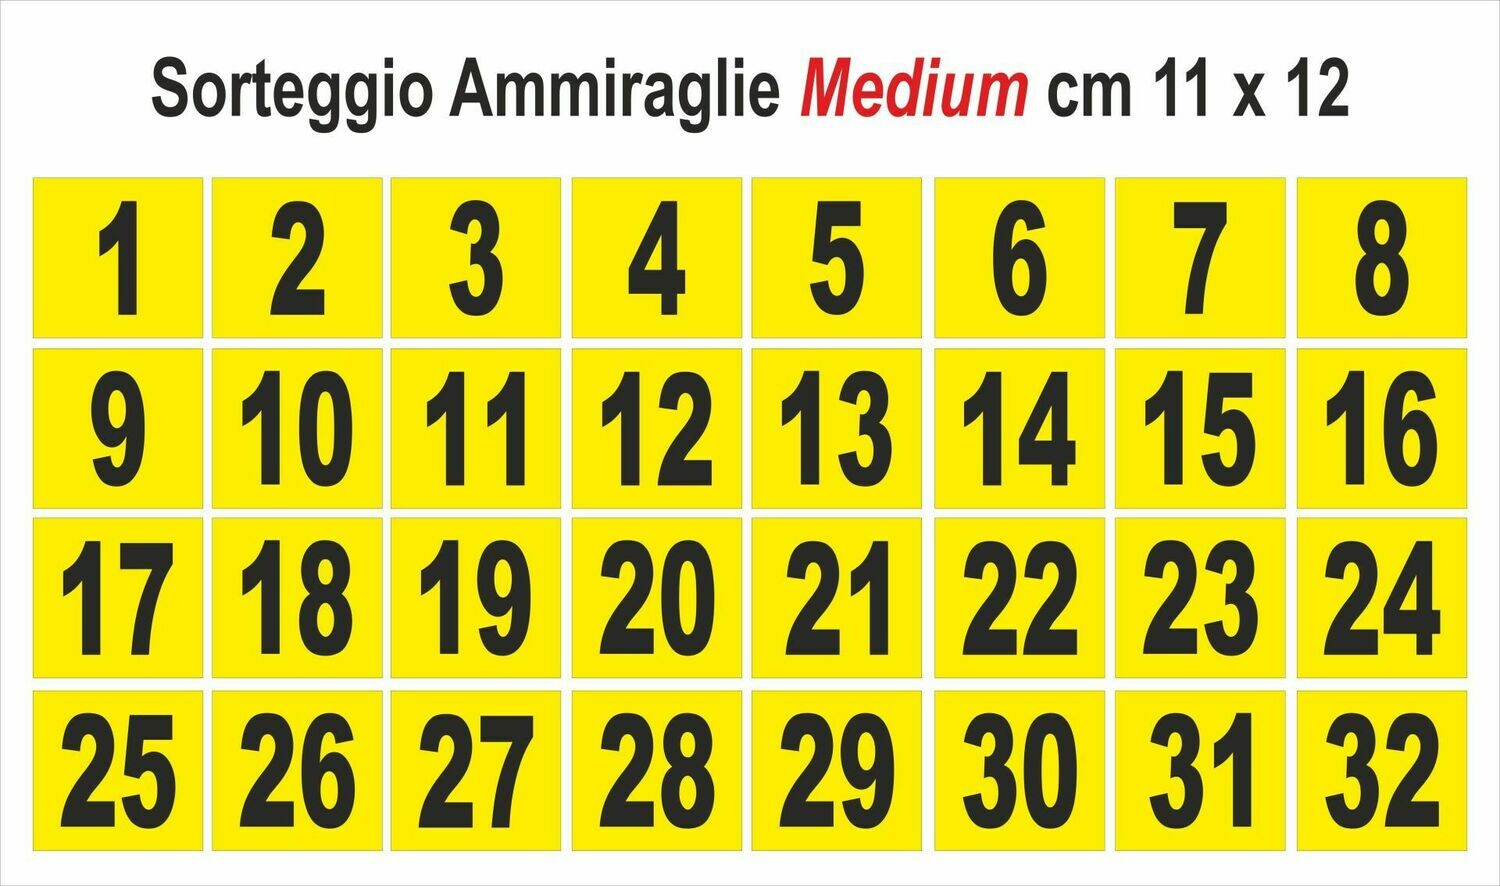 Medium - Numeri da 1 a 32 cm 11 x 12